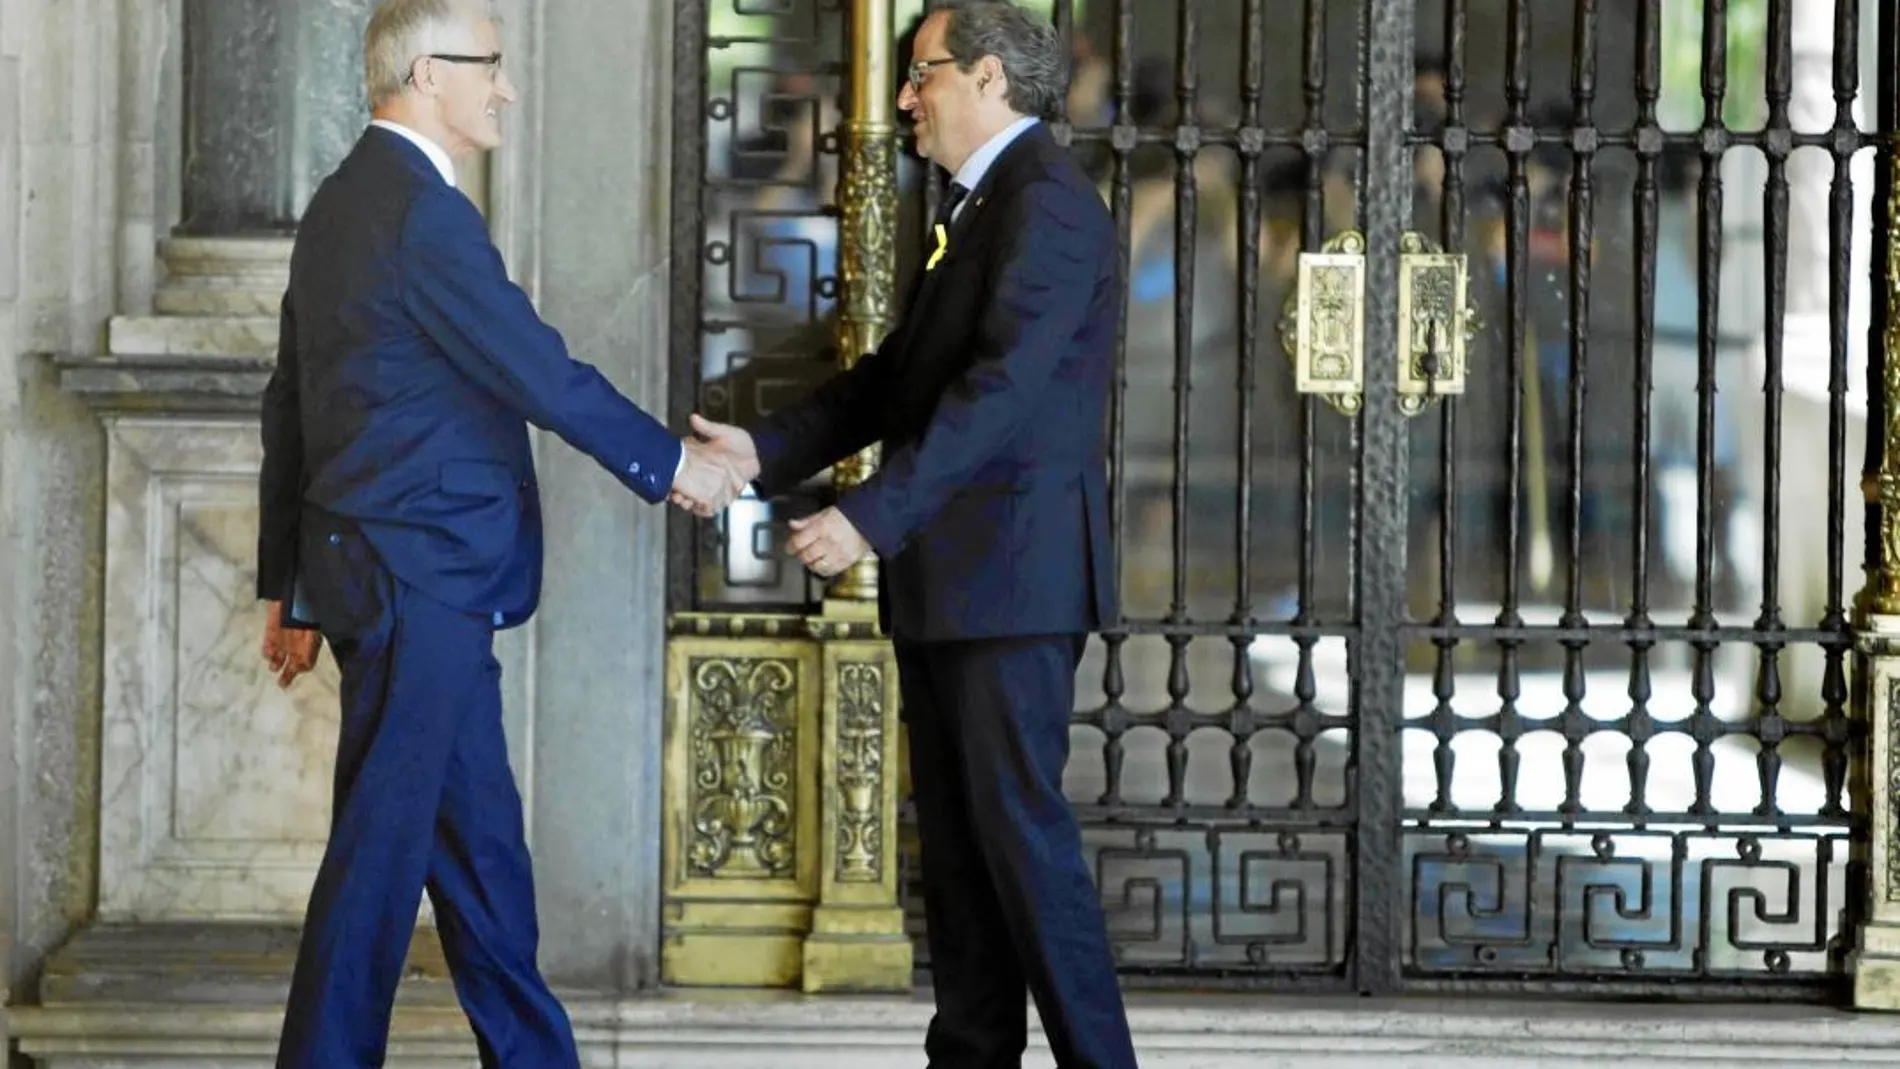 El president de la Generalitat, Quim Torra, saluda ayer al presidente de Flandes, Geert Bourgeois, antes de su reunión en el Palau de la Generalitat de Barcelona